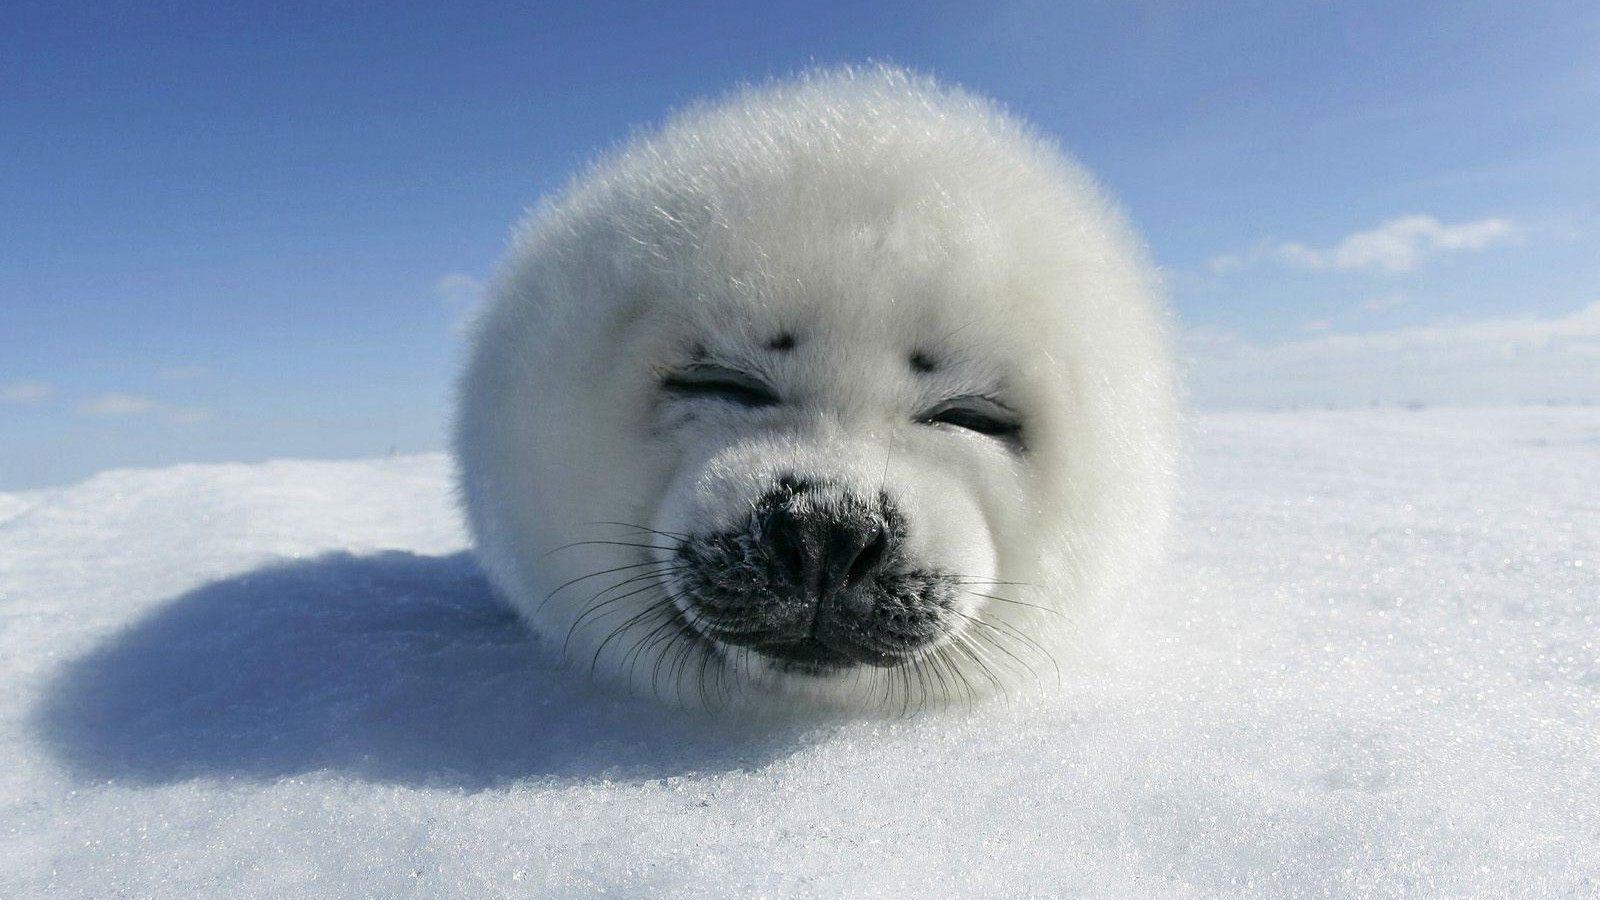 Seal baby Photos Show